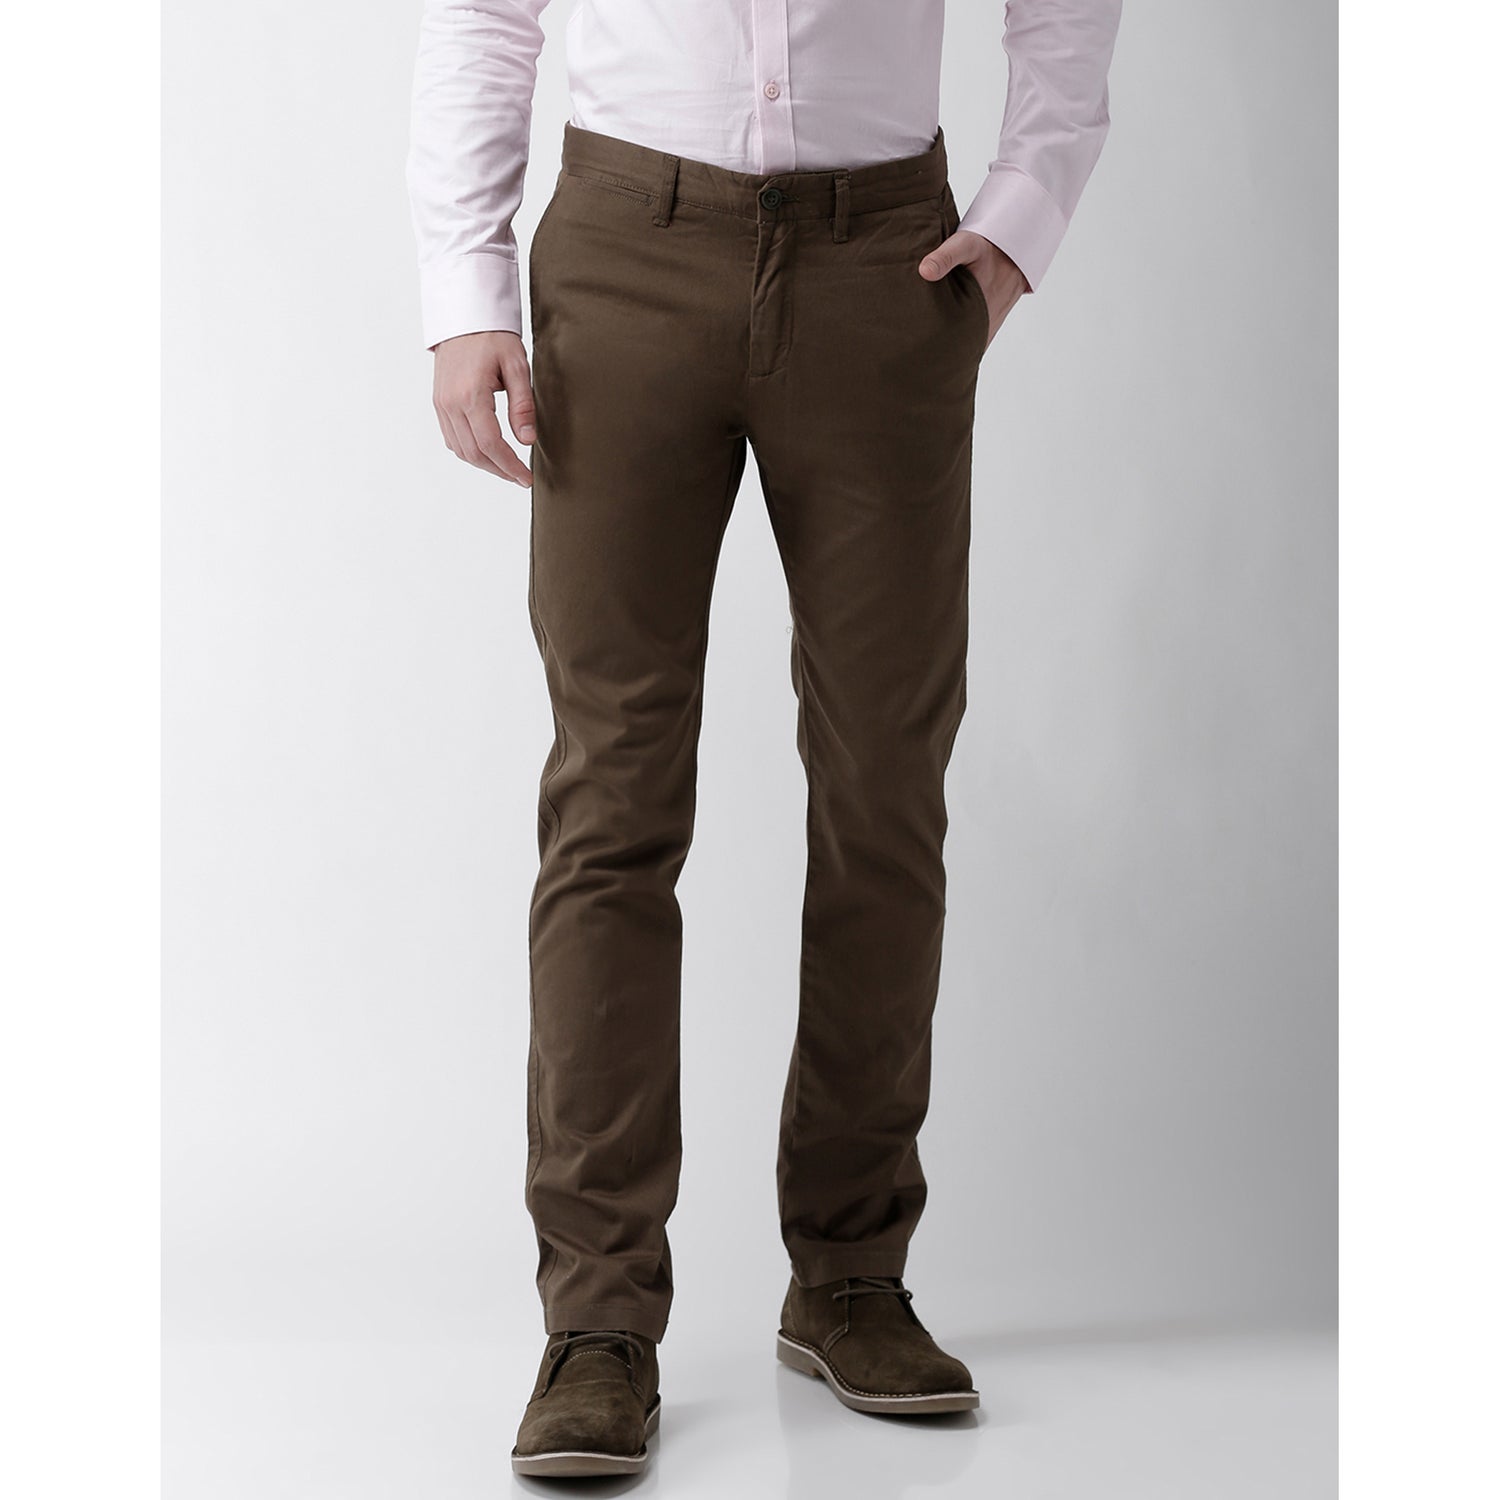 Brown Solid Slim Fit Regular Trousers (MOPRIMA)